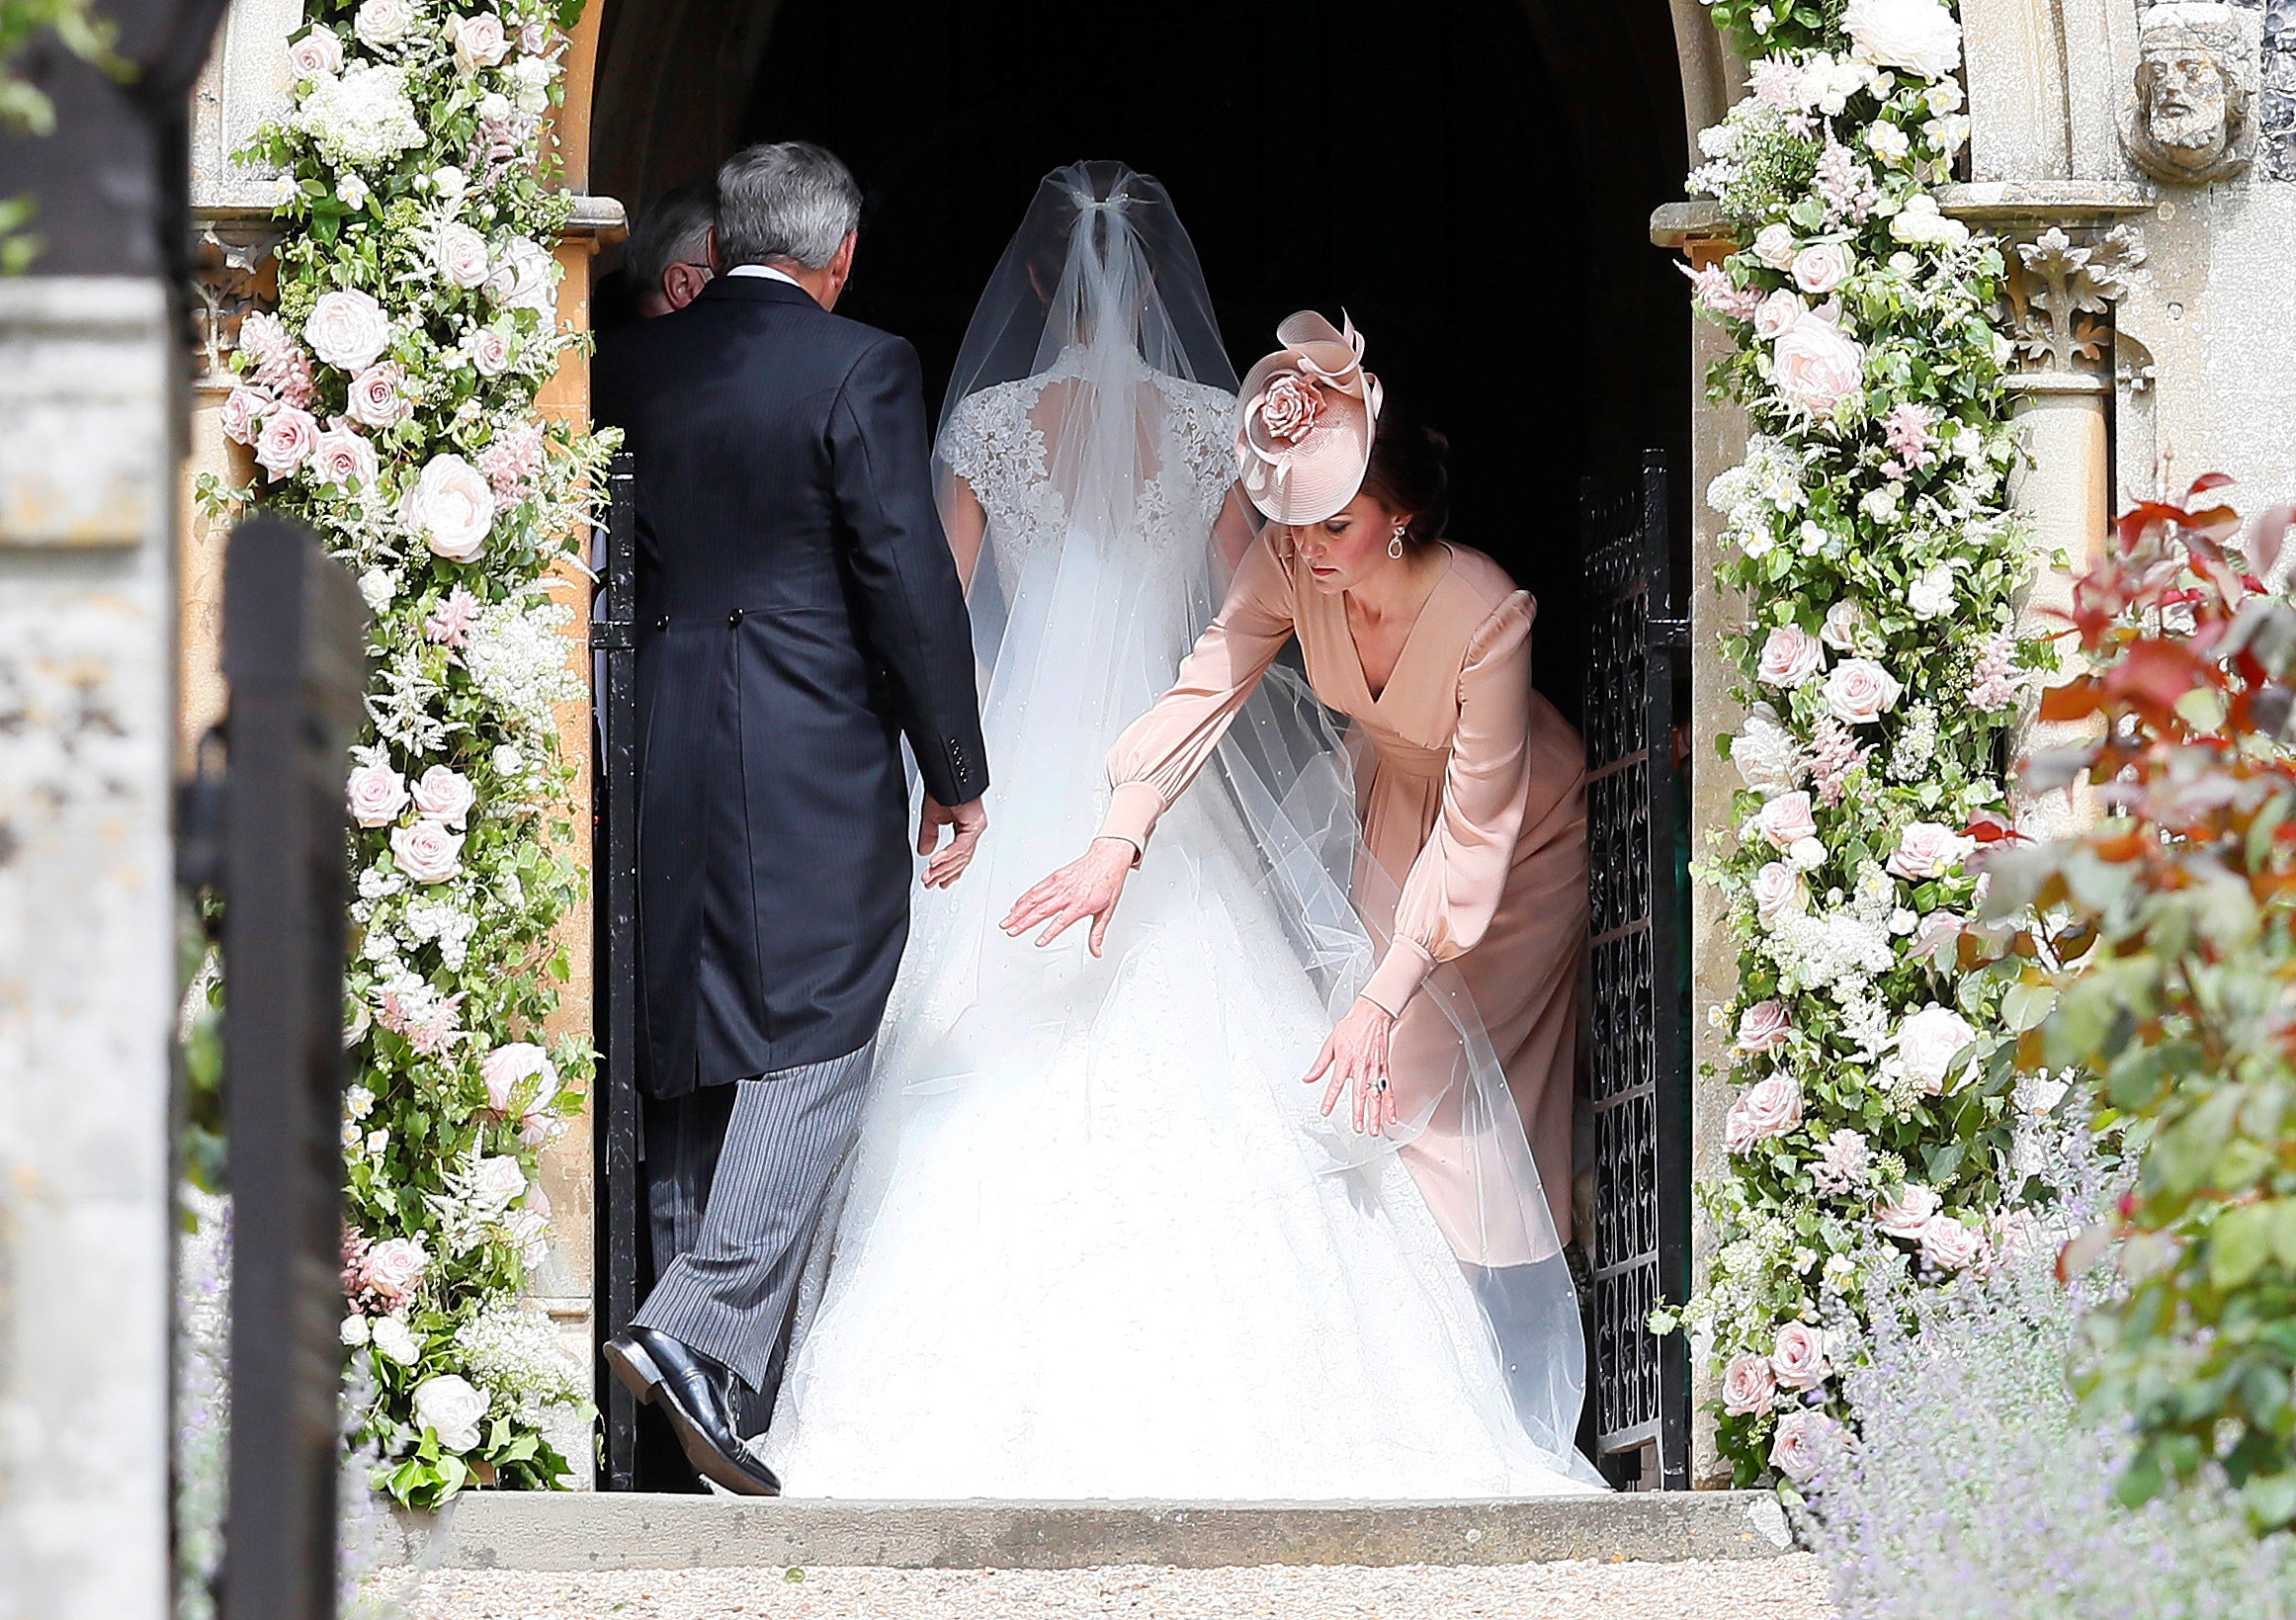 كاثرين دوقة كامبريدج تلعب دور وصيفة العروسة